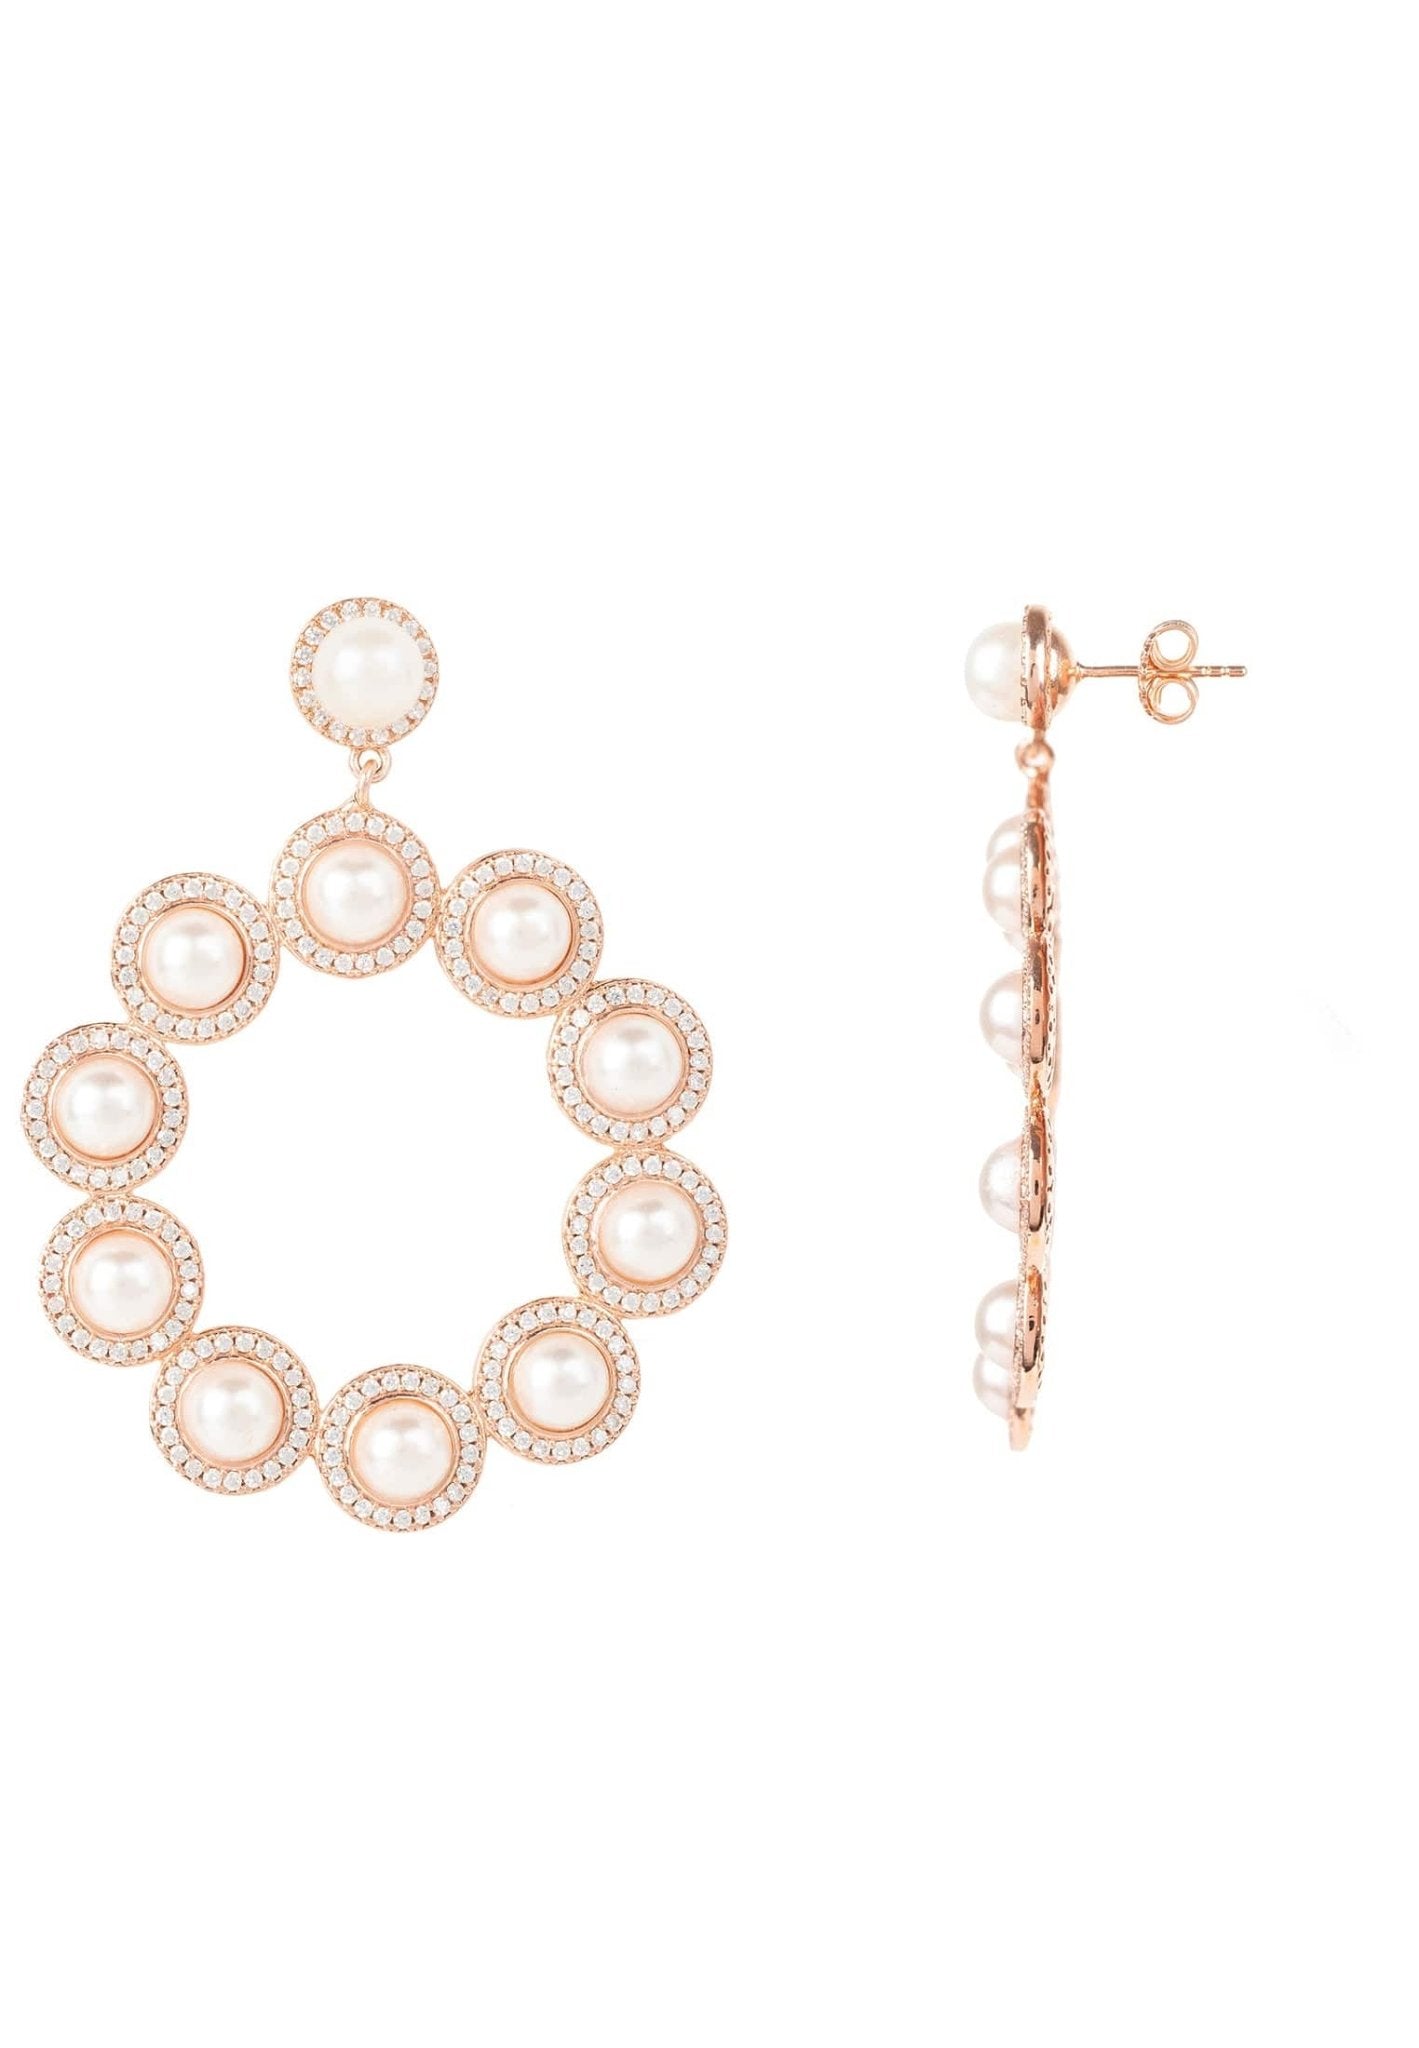 Gatsby Pearl Gemstone Statement Earrings Rosegold - LATELITA Earrings